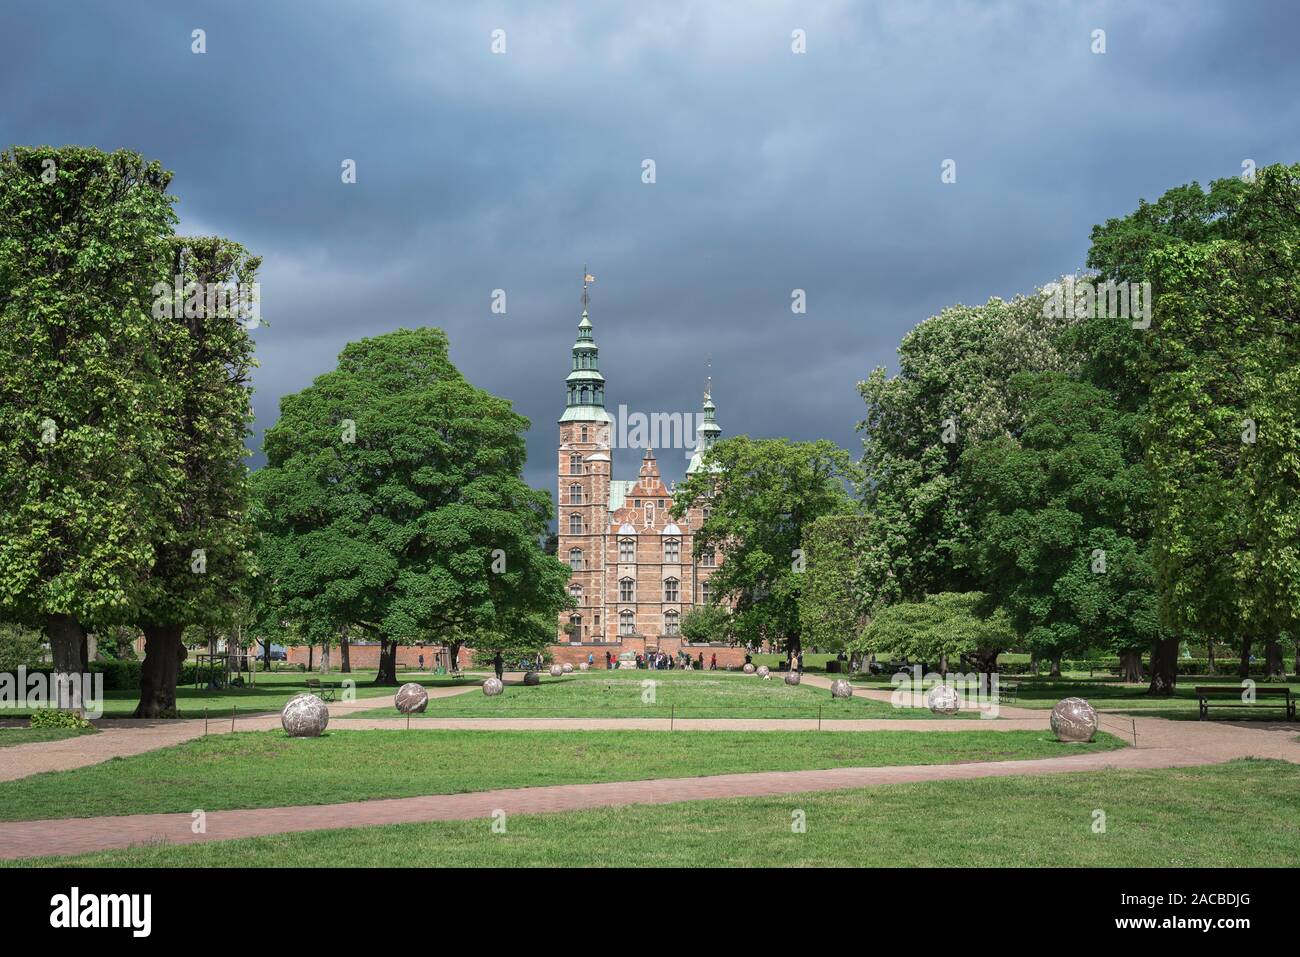 Château de Rosenborg Copenhague, voir à l'été de château de Rosenborg (encoche) entouré par la plus ancienne, Kongens Have royal gardens à Copenhague, Danemark. Banque D'Images